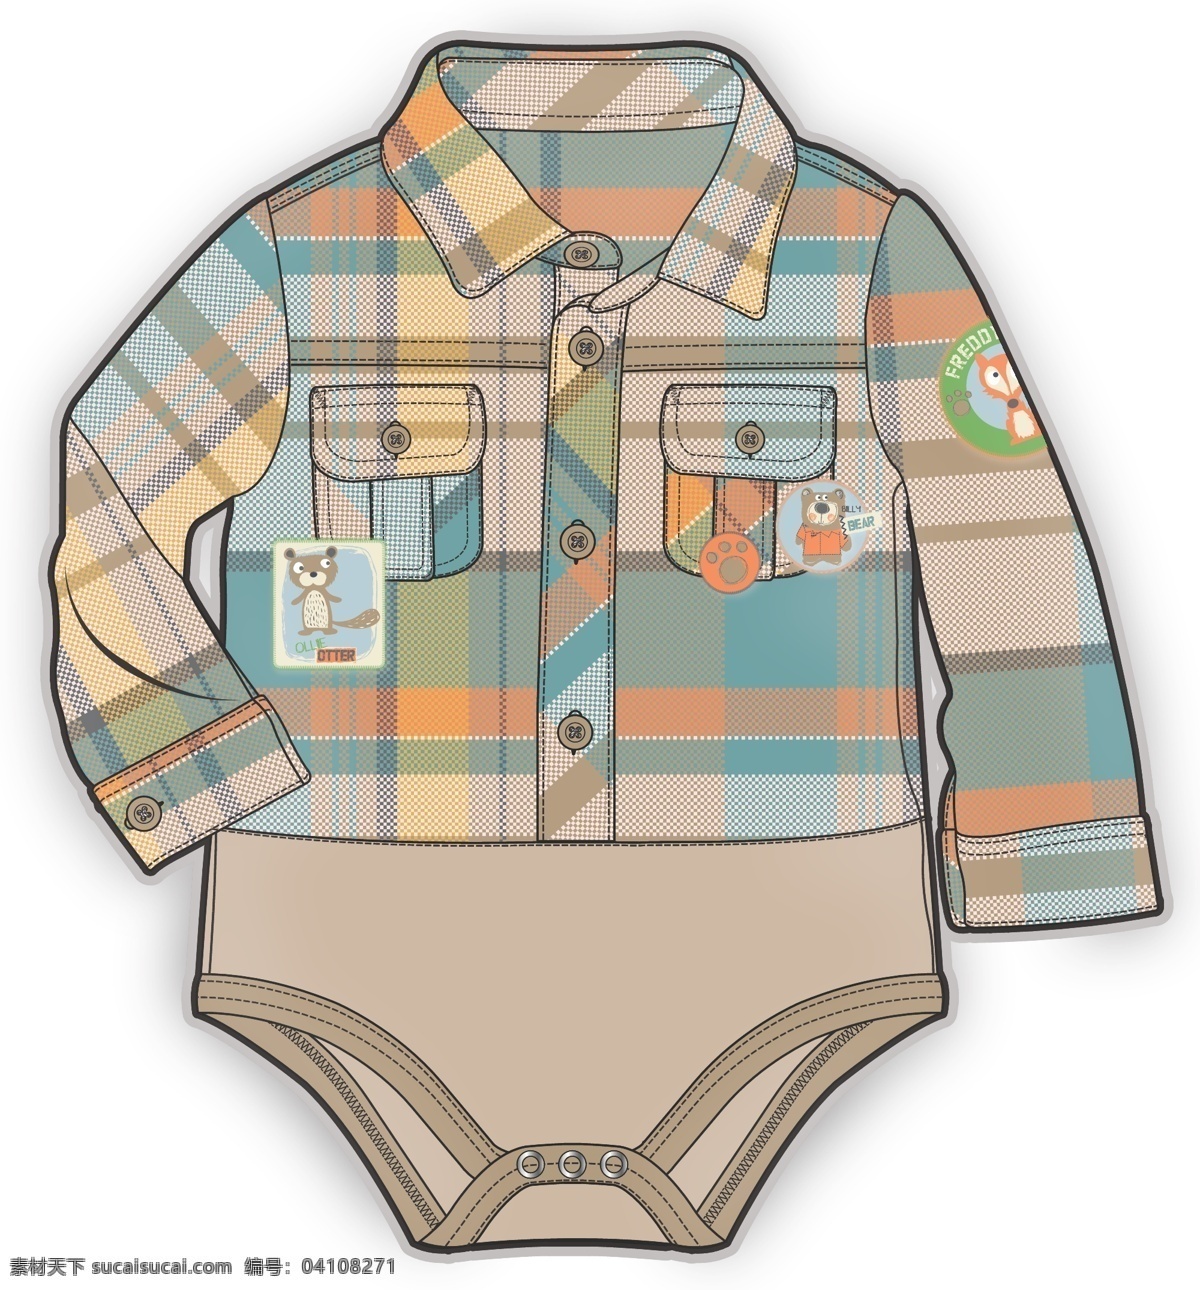 连体 格子 衫 彩色 婴儿 服装设计 矢量 儿童服装设计 可爱 手绘 保暖 线条 源文件